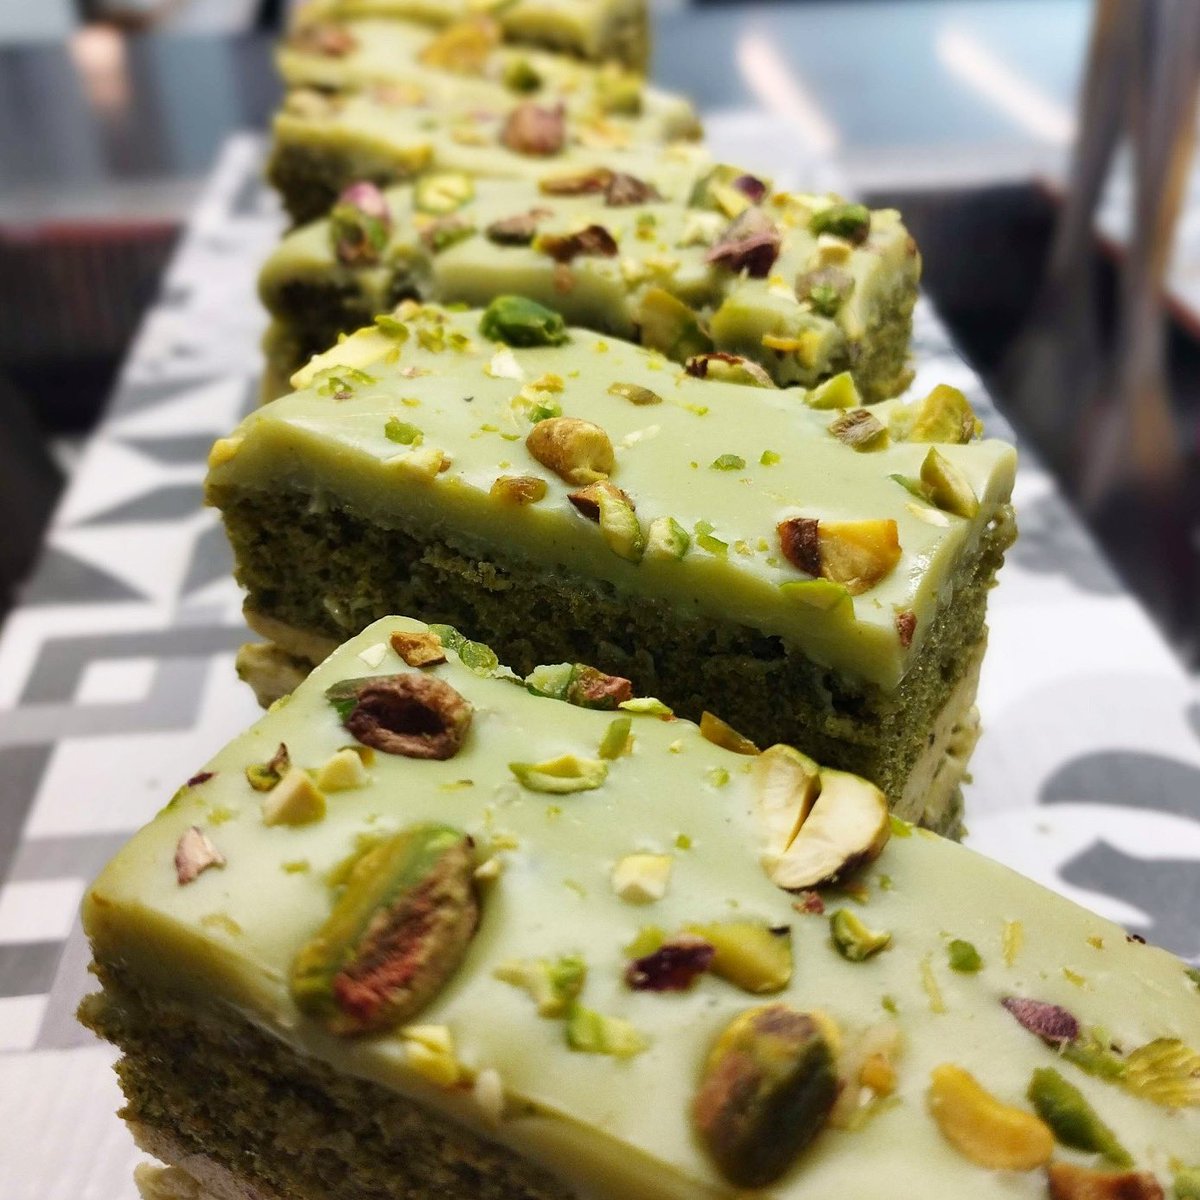 Pistachio and Matcha layered Cake! 🍵 💚

👩🏻‍🍳- Jennifer Mackey 

#hospitality #chefsofinstagram #cake #matcha #fuelyourindividuality #irishfoodscene